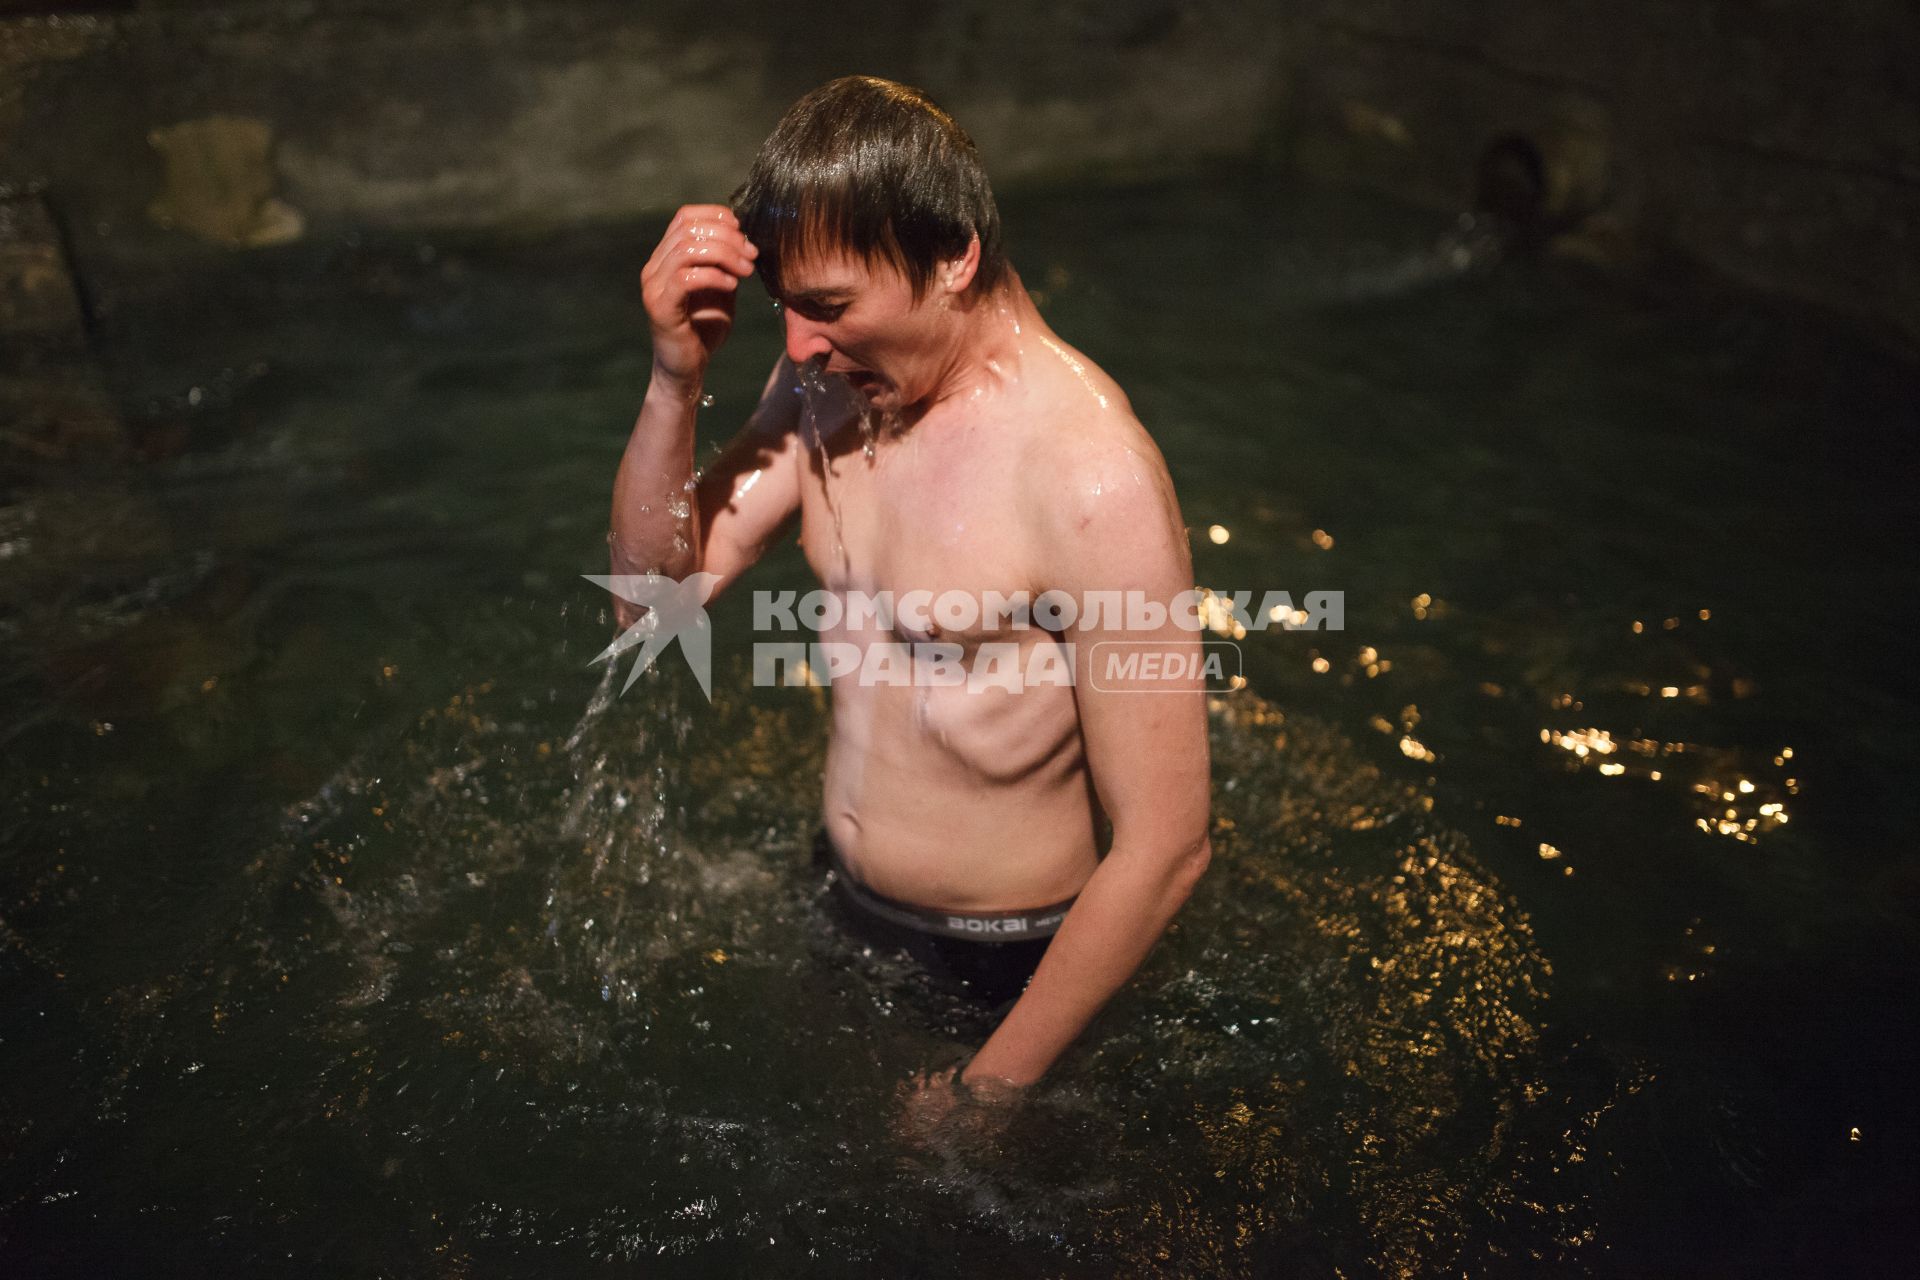 Ставрополь. Верующий во время крещенского купания.